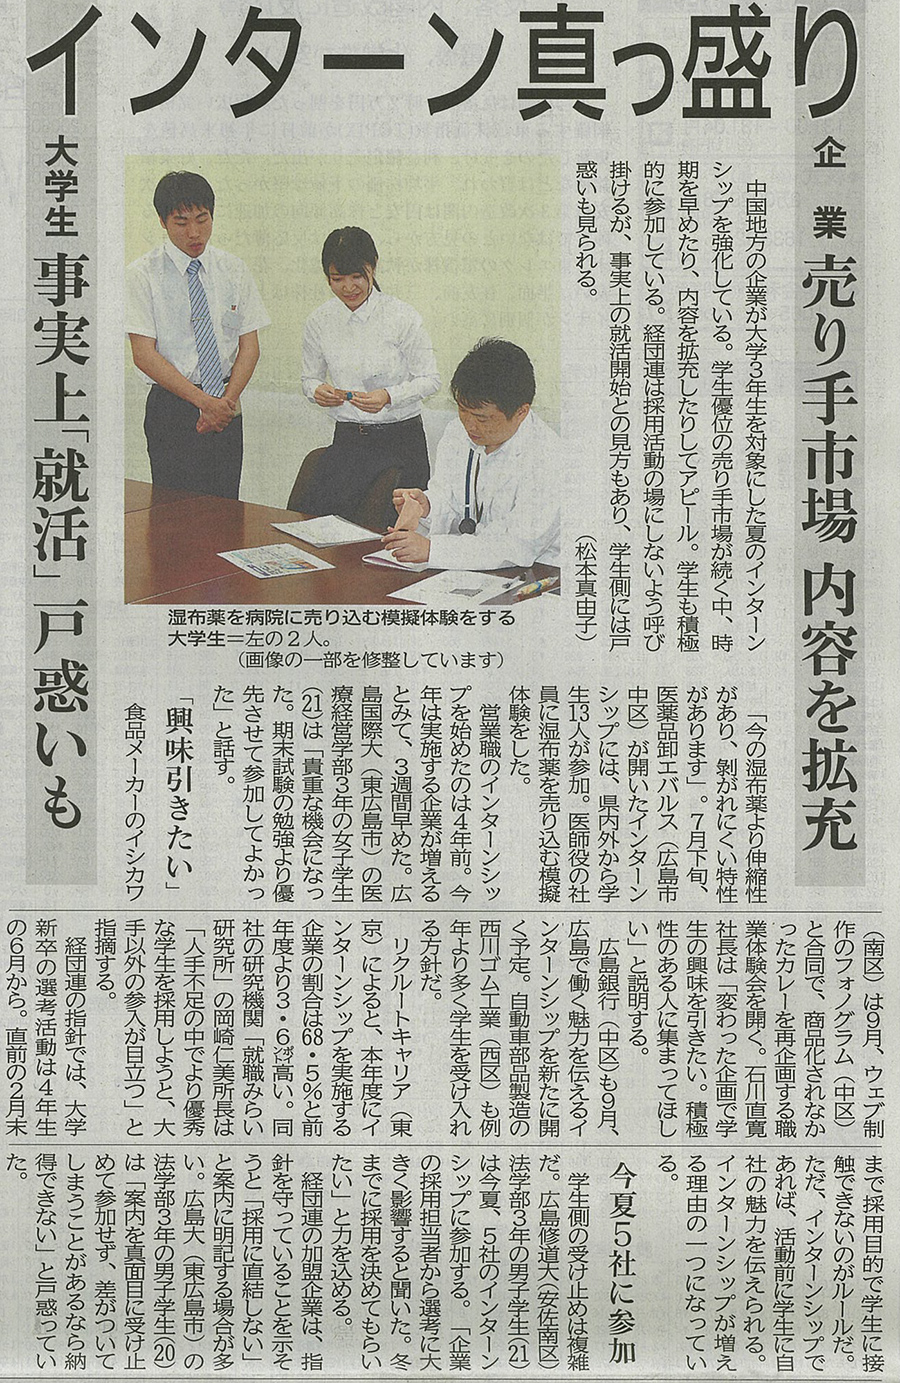 https://www.phonogram.co.jp/news/images/news.jpg